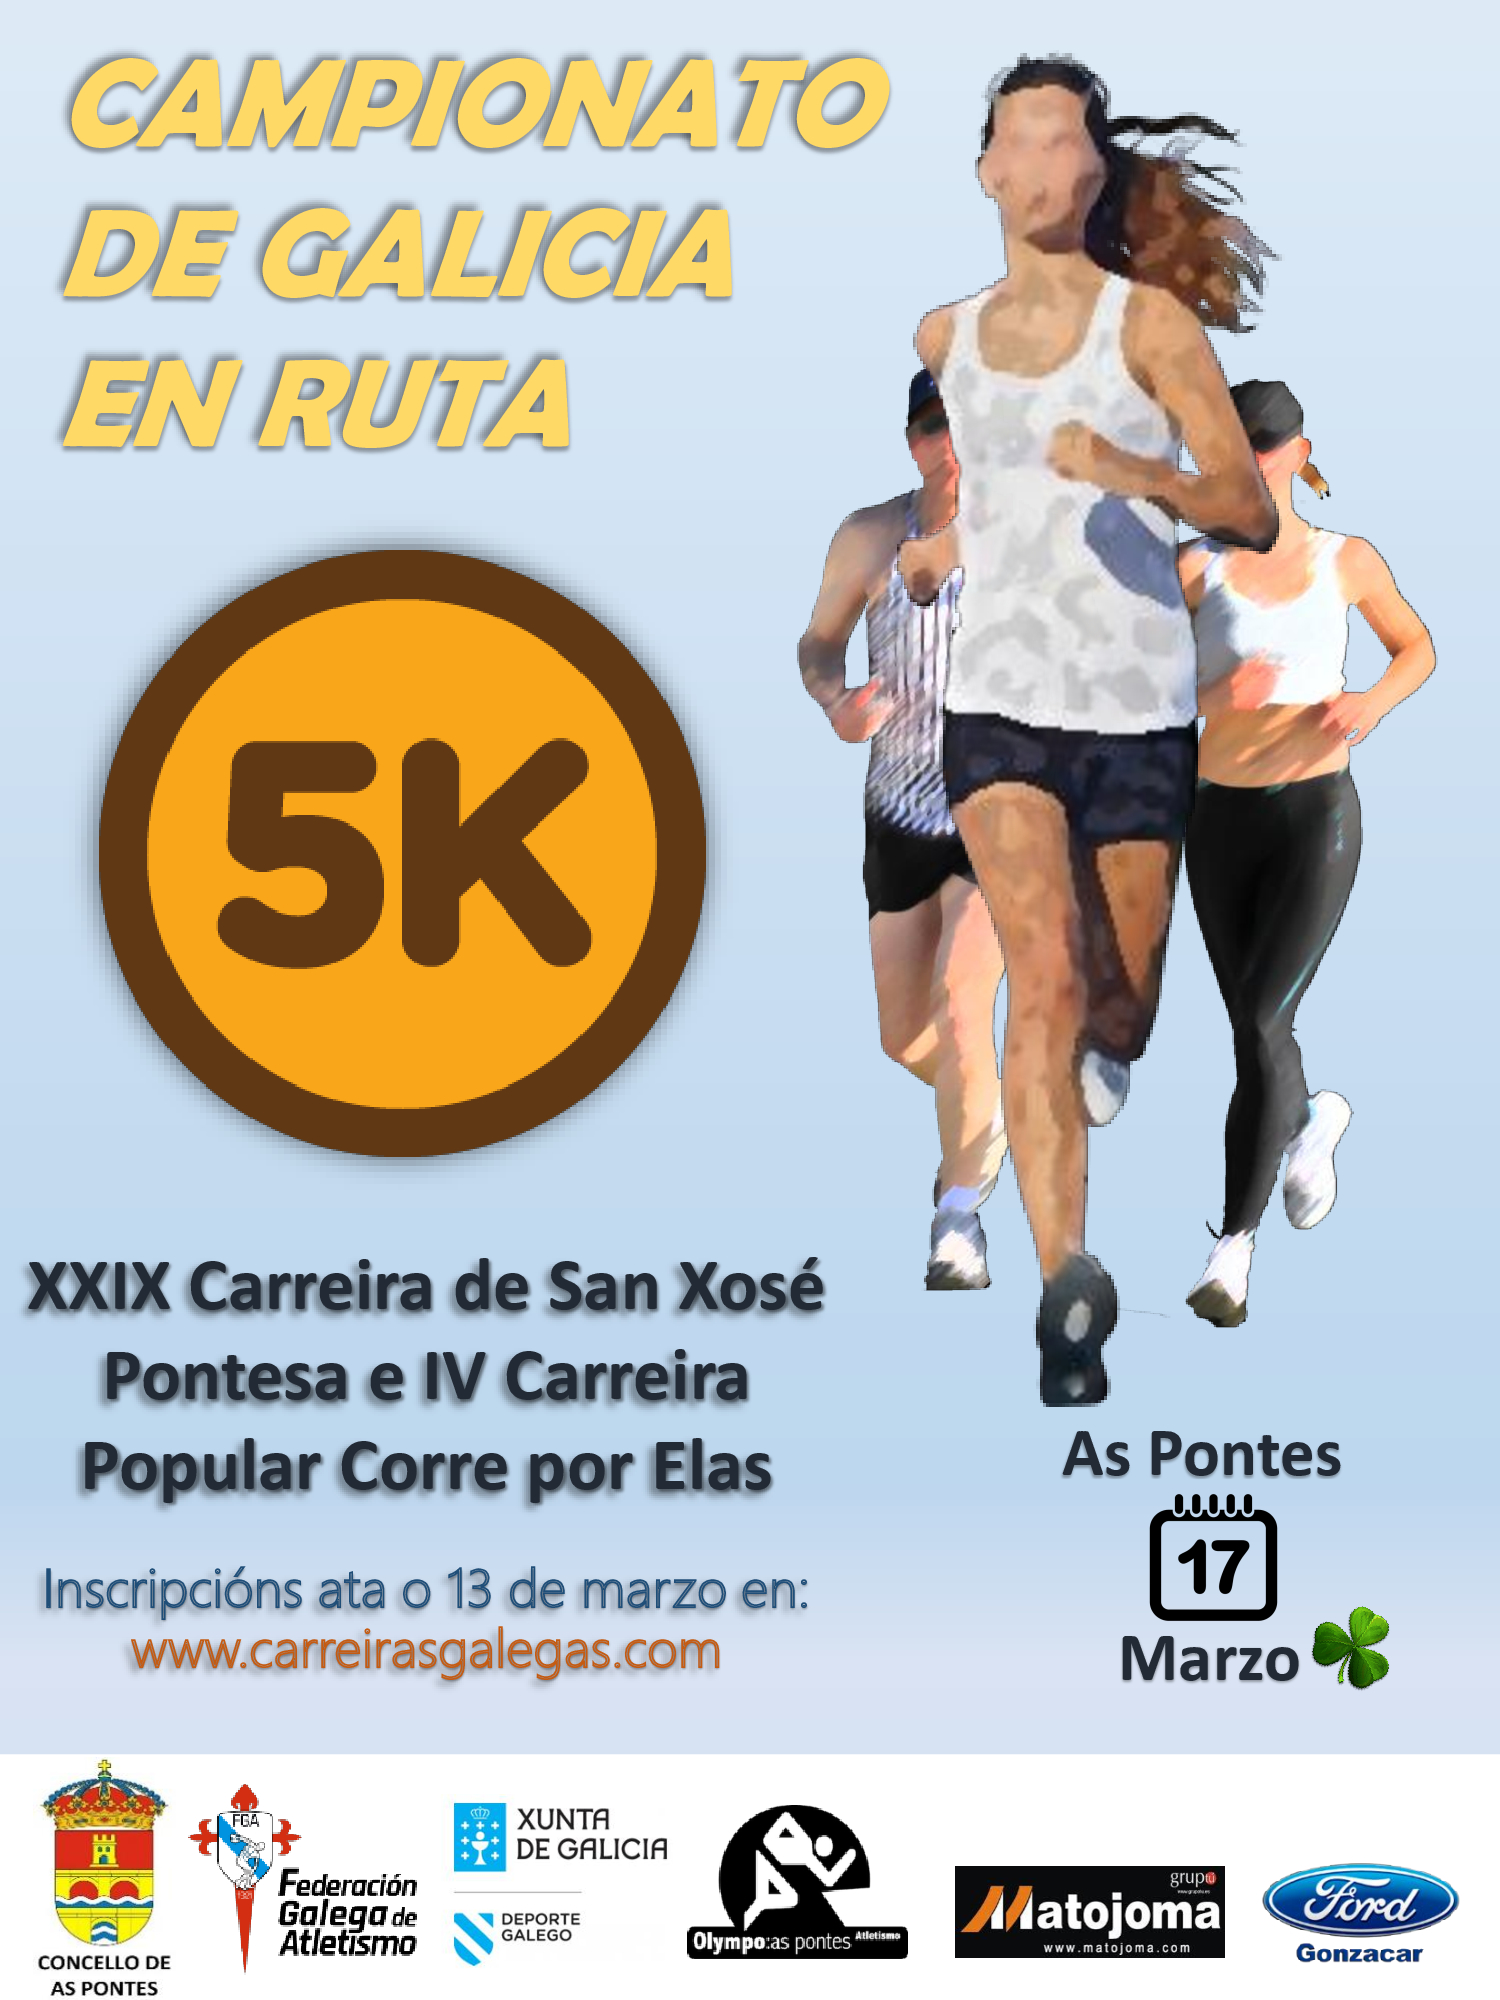 Campionato de Galicia de 5 Km. en Ruta 2018/2019